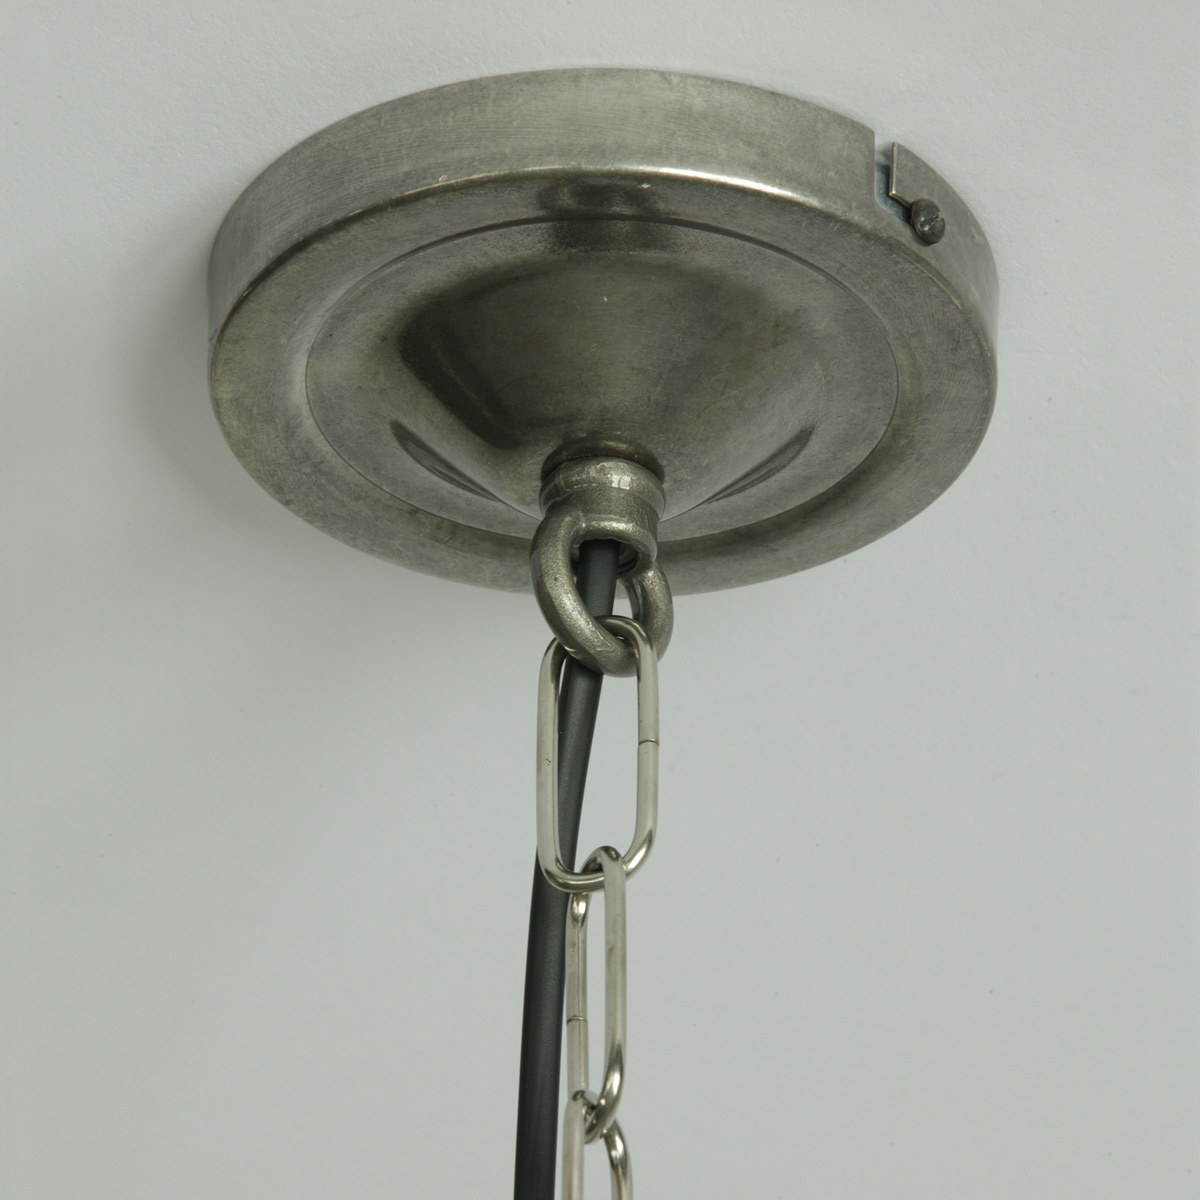 Kleine Hängeleuchte mit Kette und prismatischen Glasschirm: Deckenteil zur Kettenaufhängung, alt-silbern patiniert, Ø 10 cm